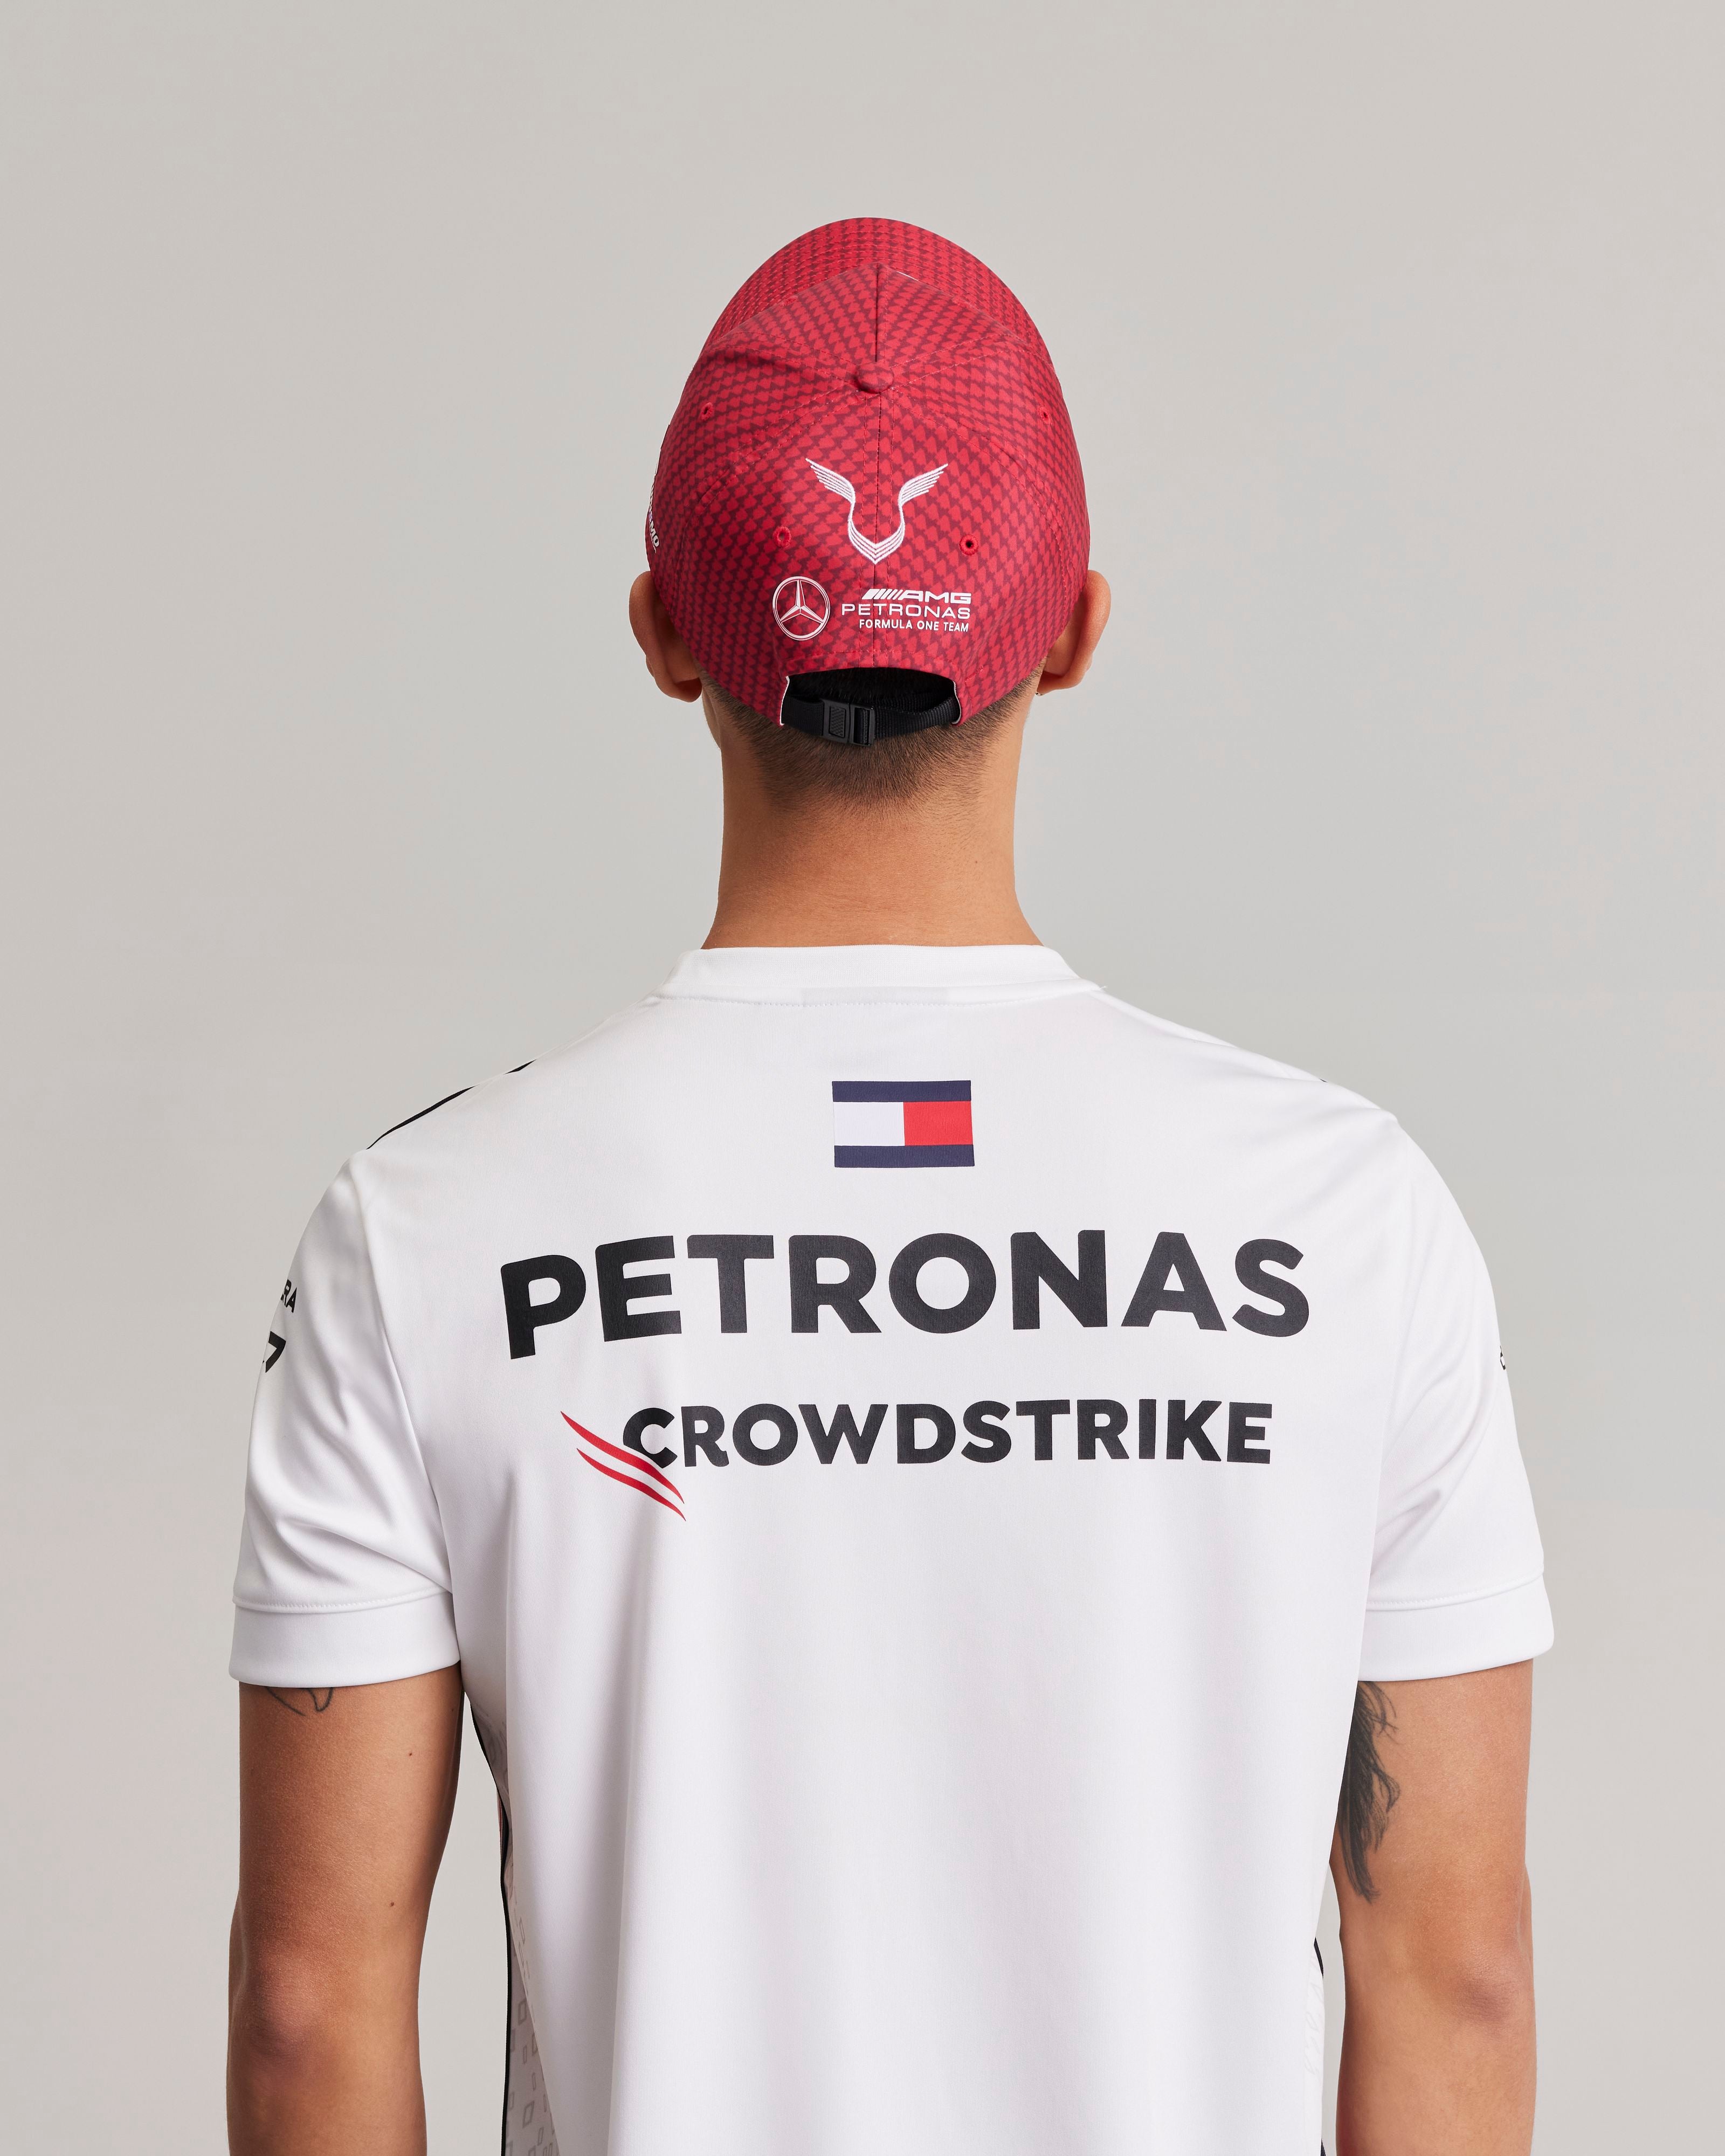 Lewis Hamilton 2023 Team Driver Cap red